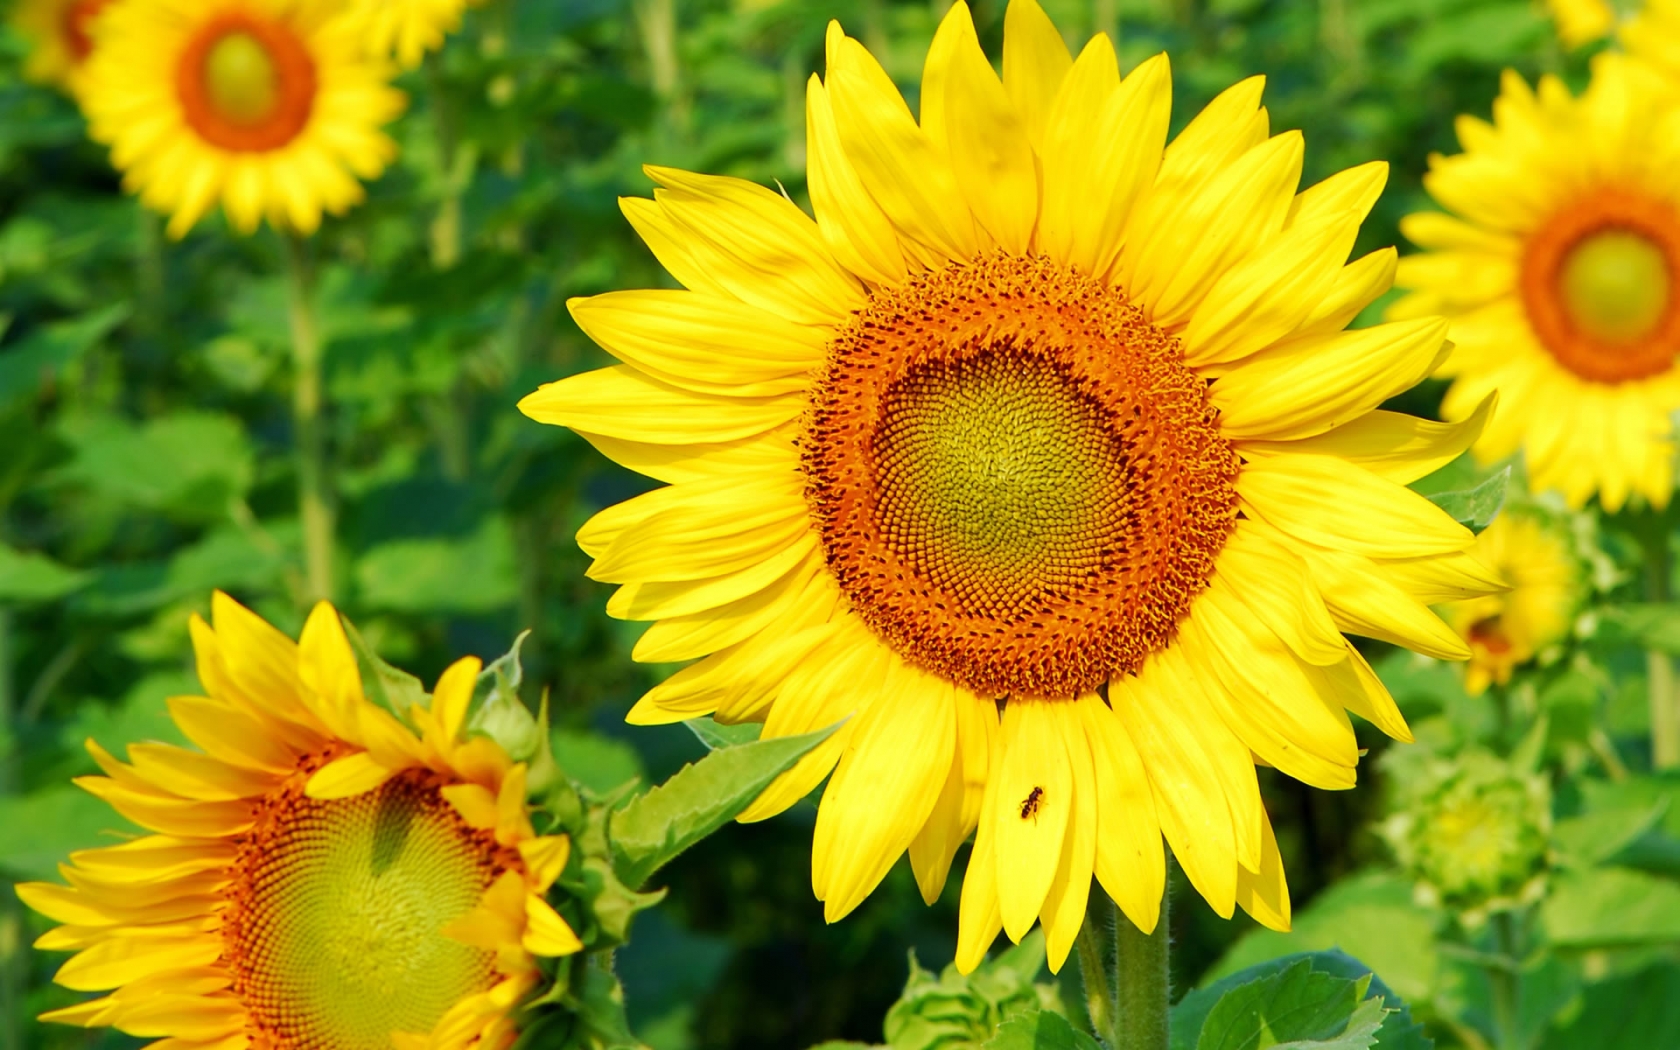 Superb Sunflower for 1680 x 1050 widescreen resolution